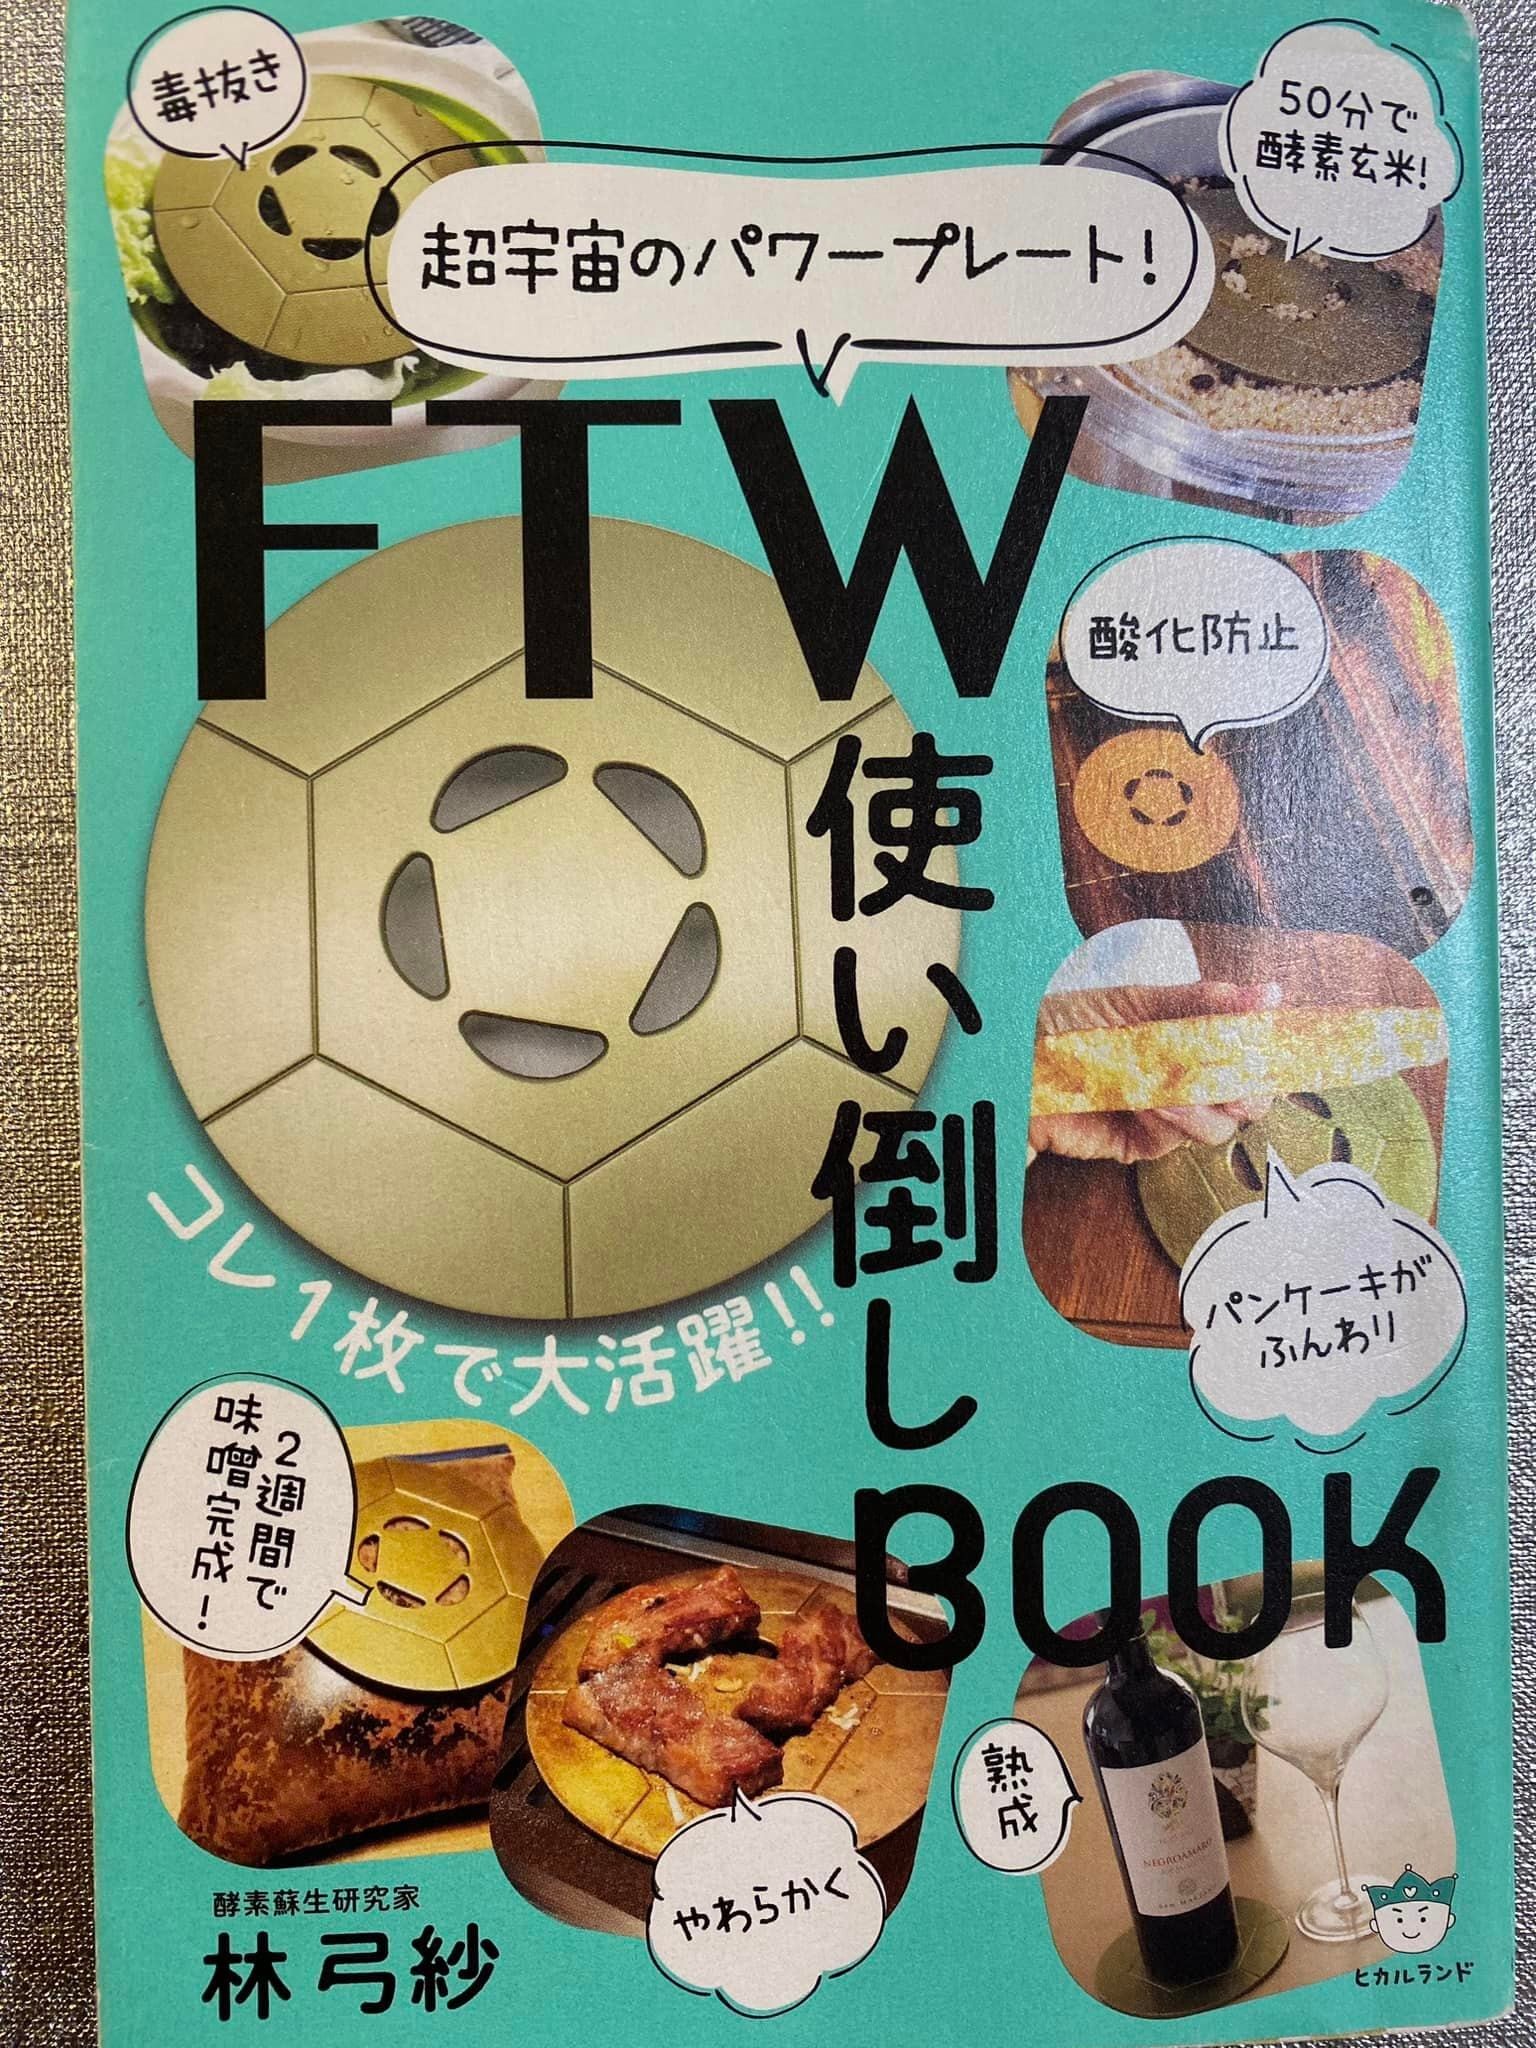 FTW Gフォーグ(初回特典「FTW使い倒しBOOK」プレゼント致します